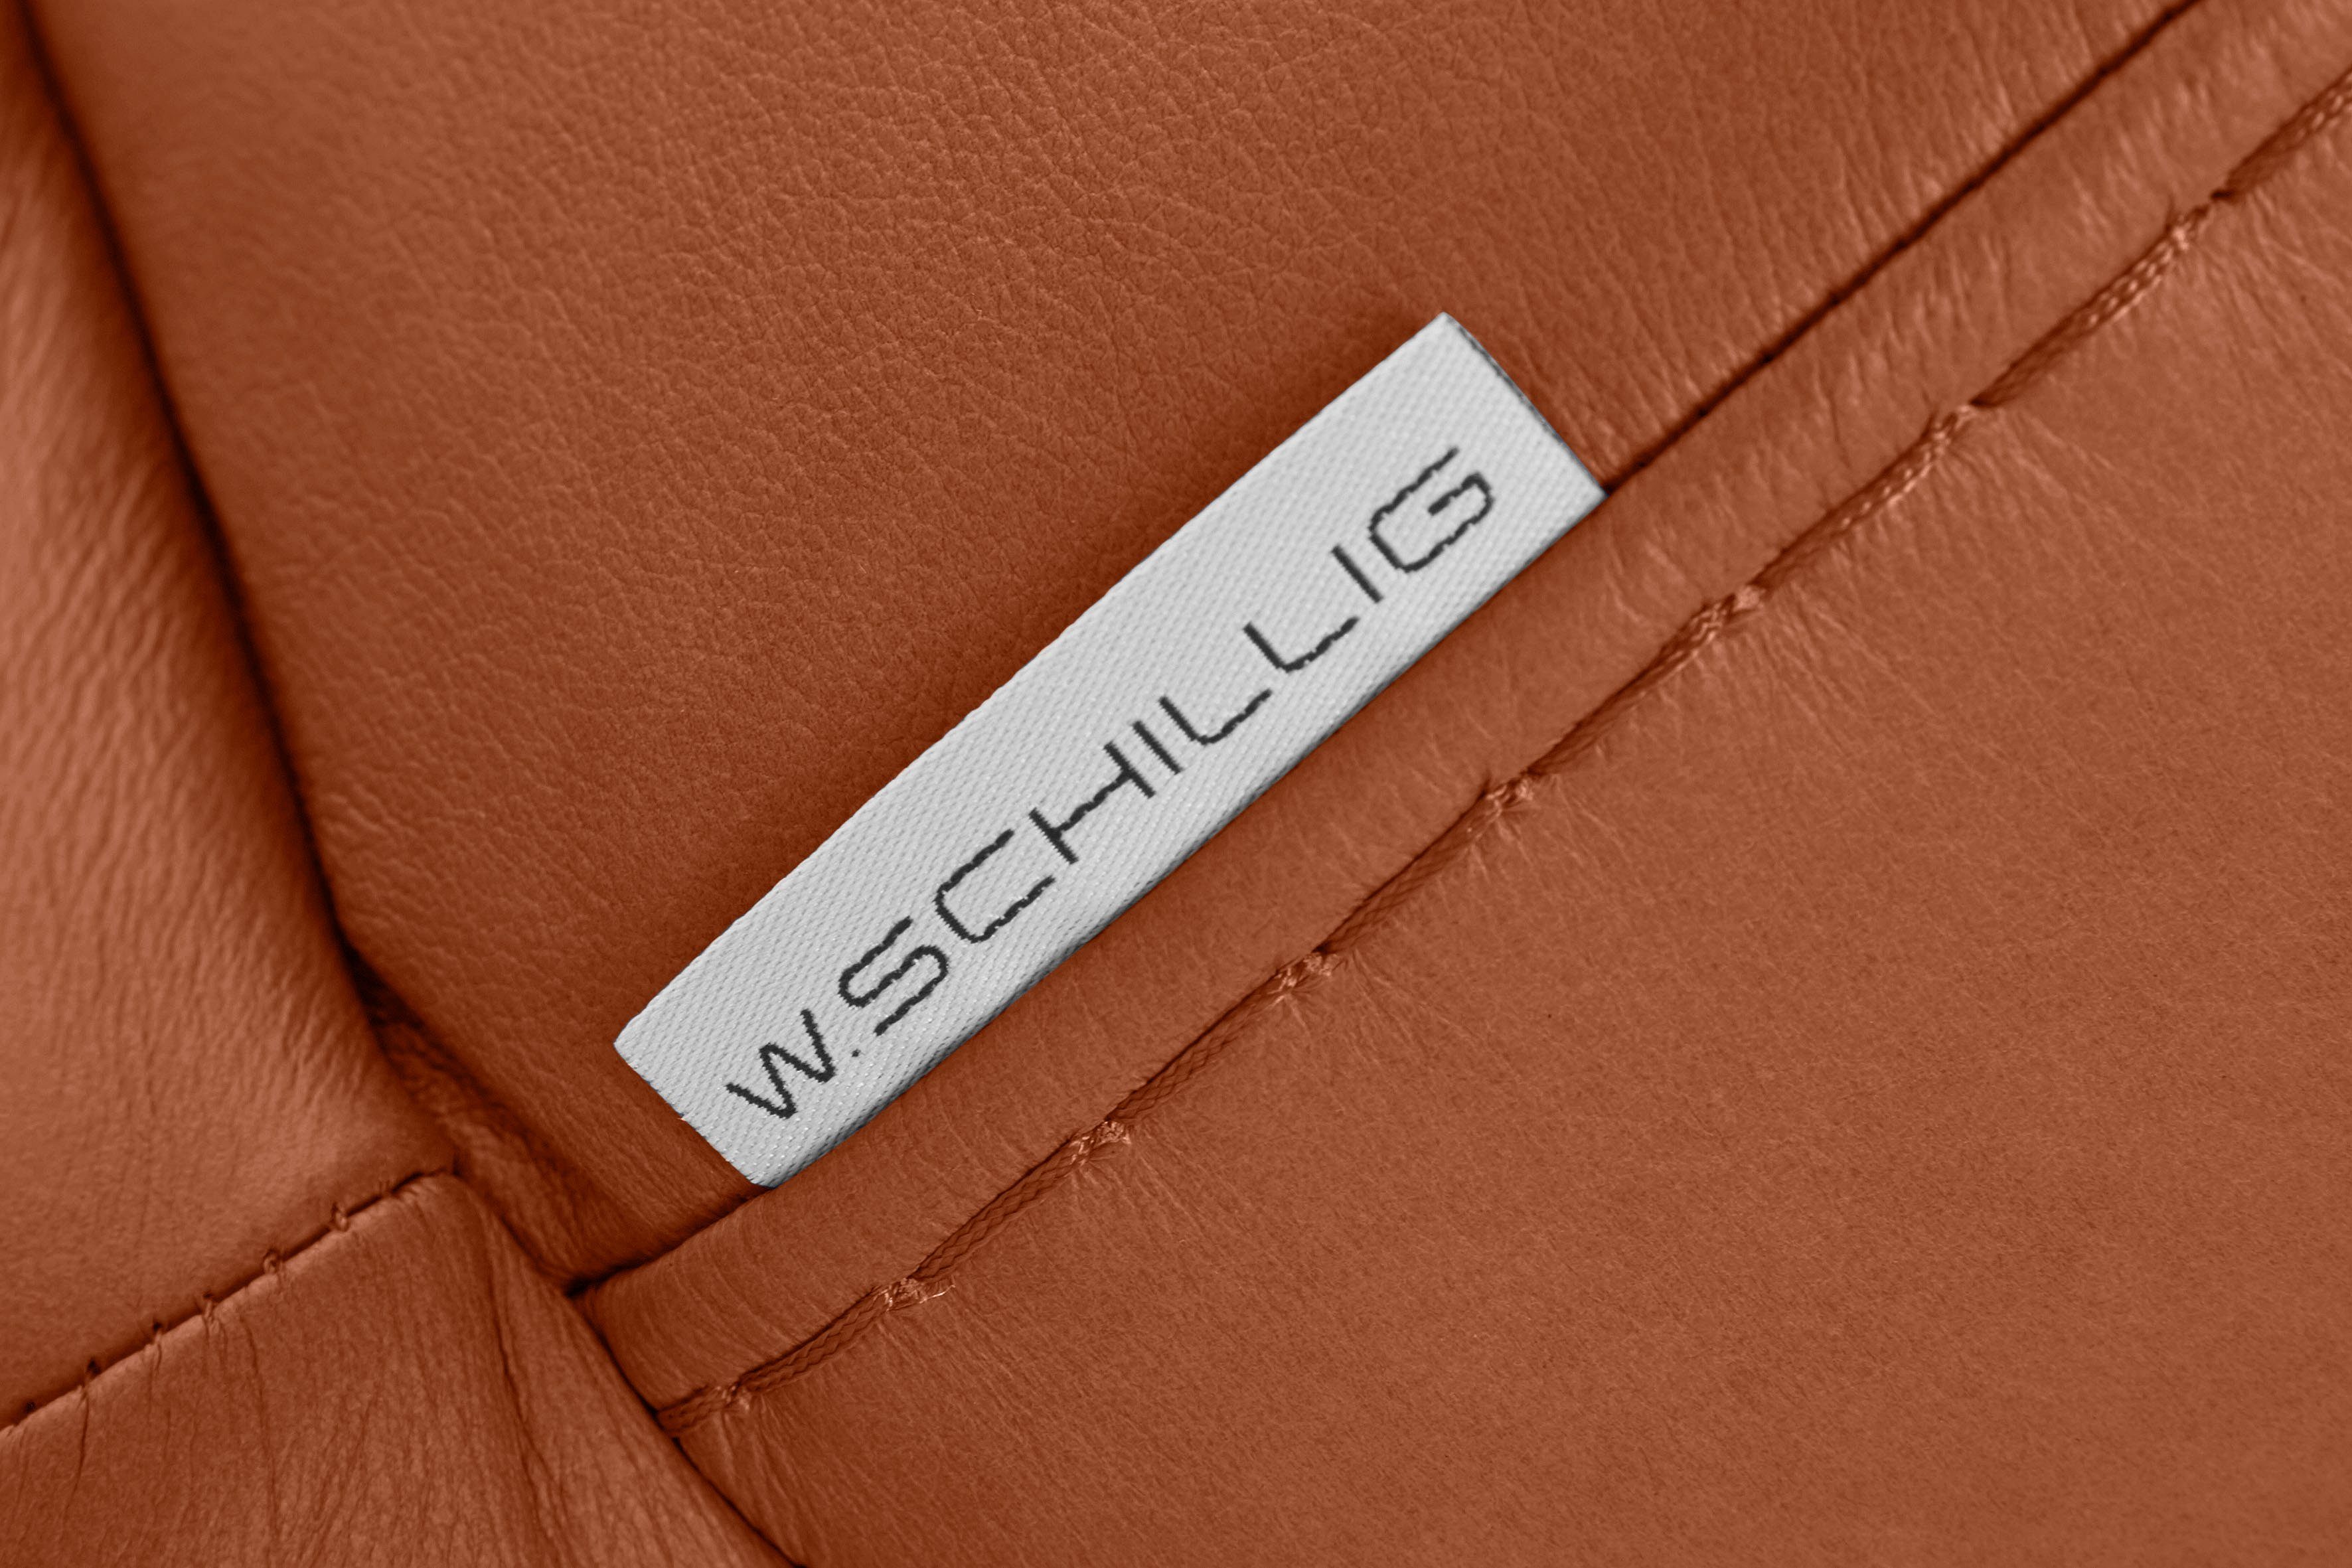 232 cm 2,5-Sitzer mit Breite montanaa, W.SCHILLIG Schwarz in pulverbeschichtet, Metallfüßen